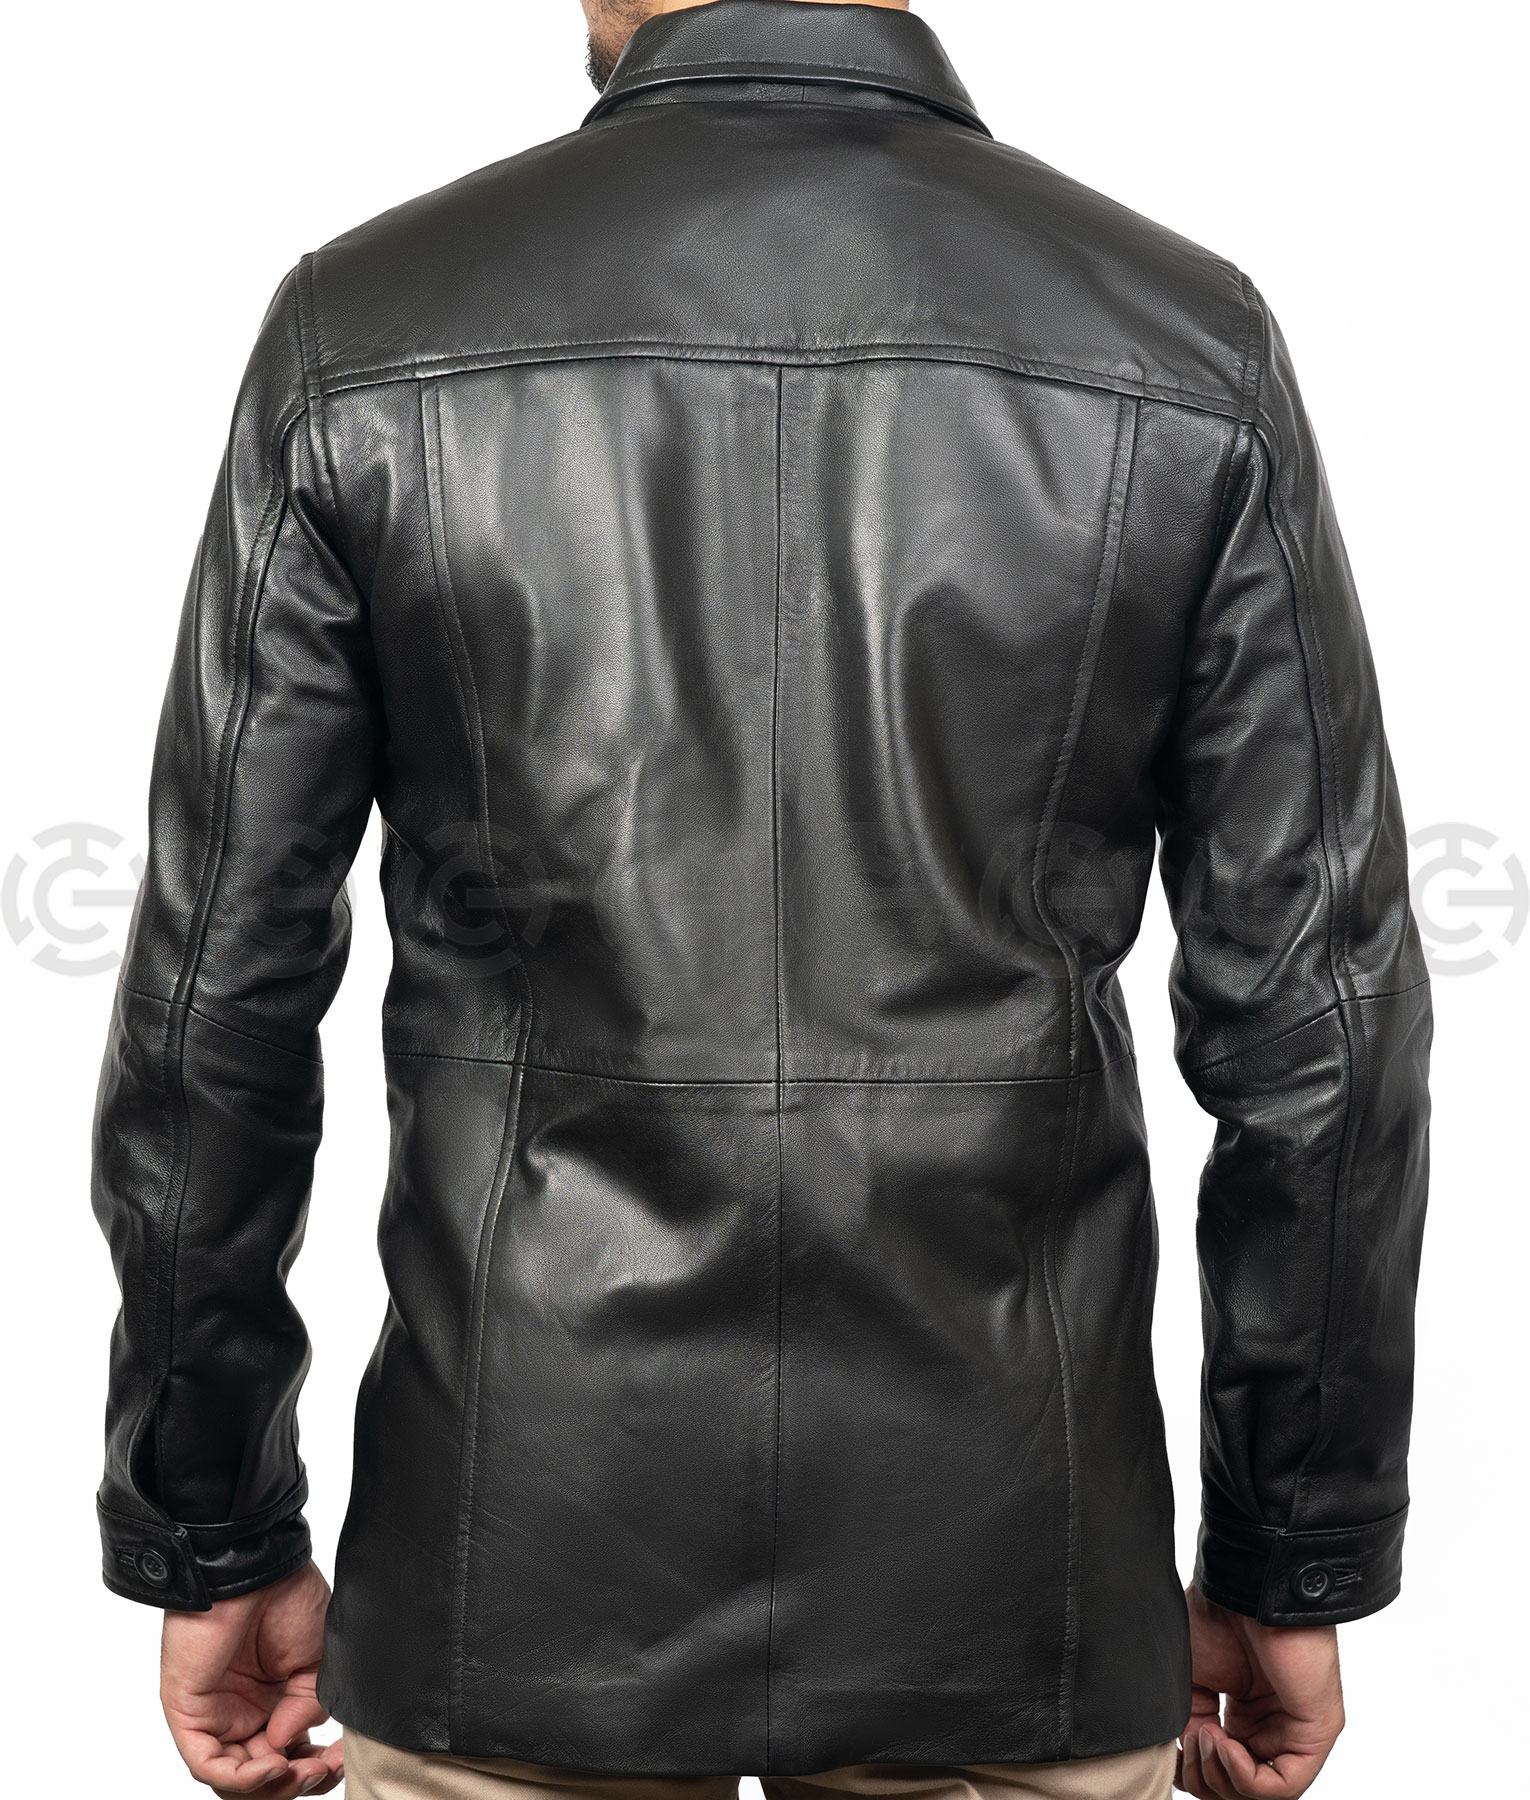 Training Day Alonzo (Denzel Washington) Leather Coat | TLC